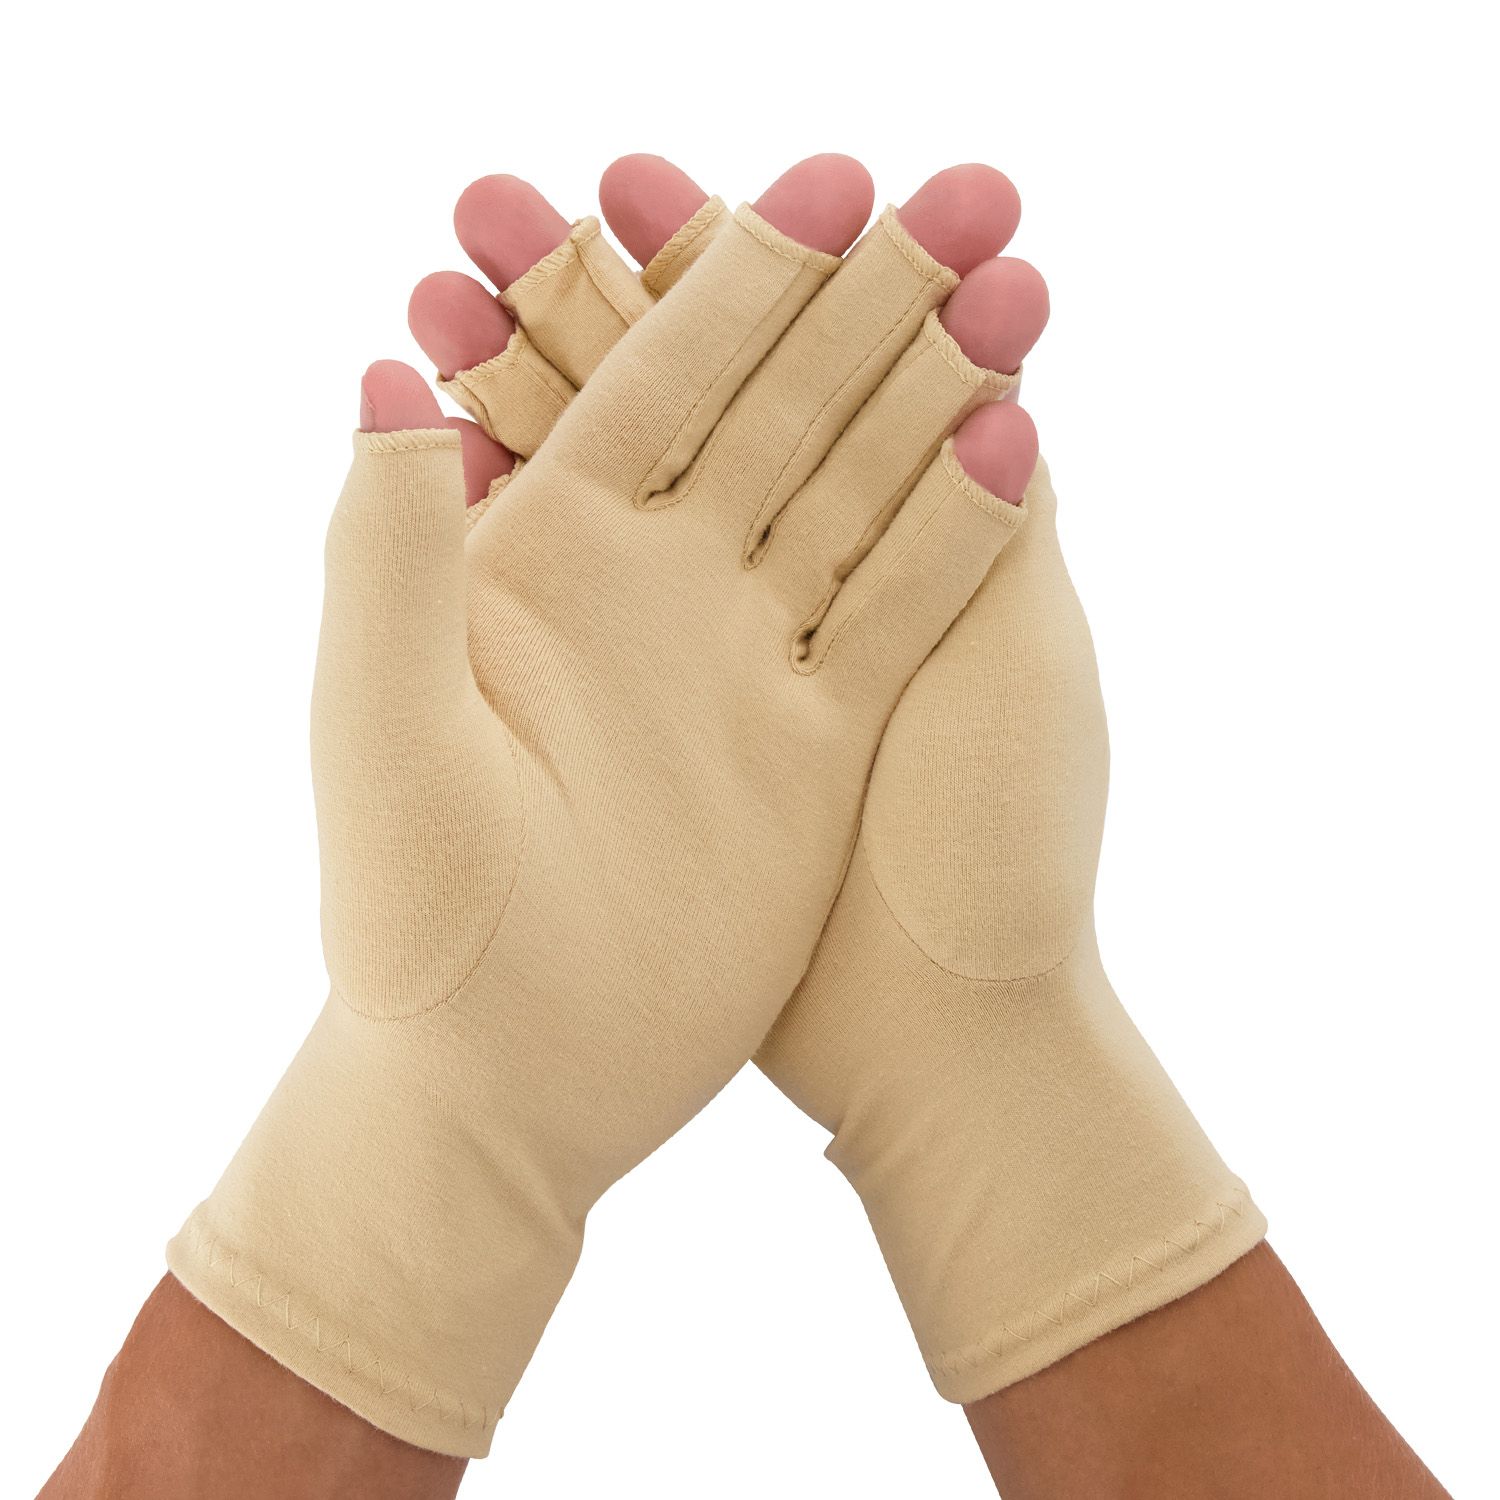 dunimed rheumatoid arthritis osteoarthritis gloves worn around both hands